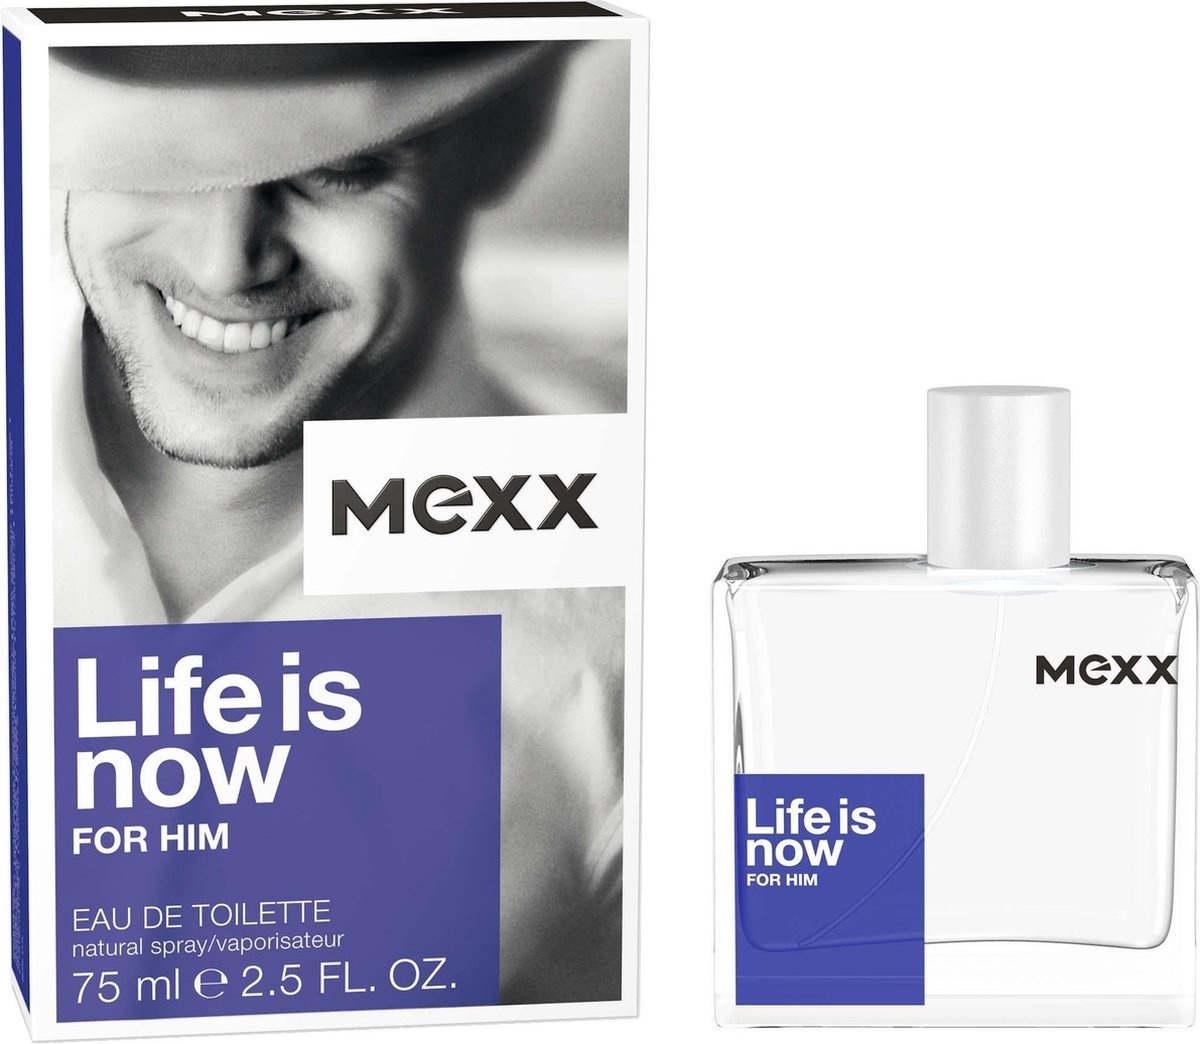 Mexx Life Is Now - 75ml - Eau de toilette